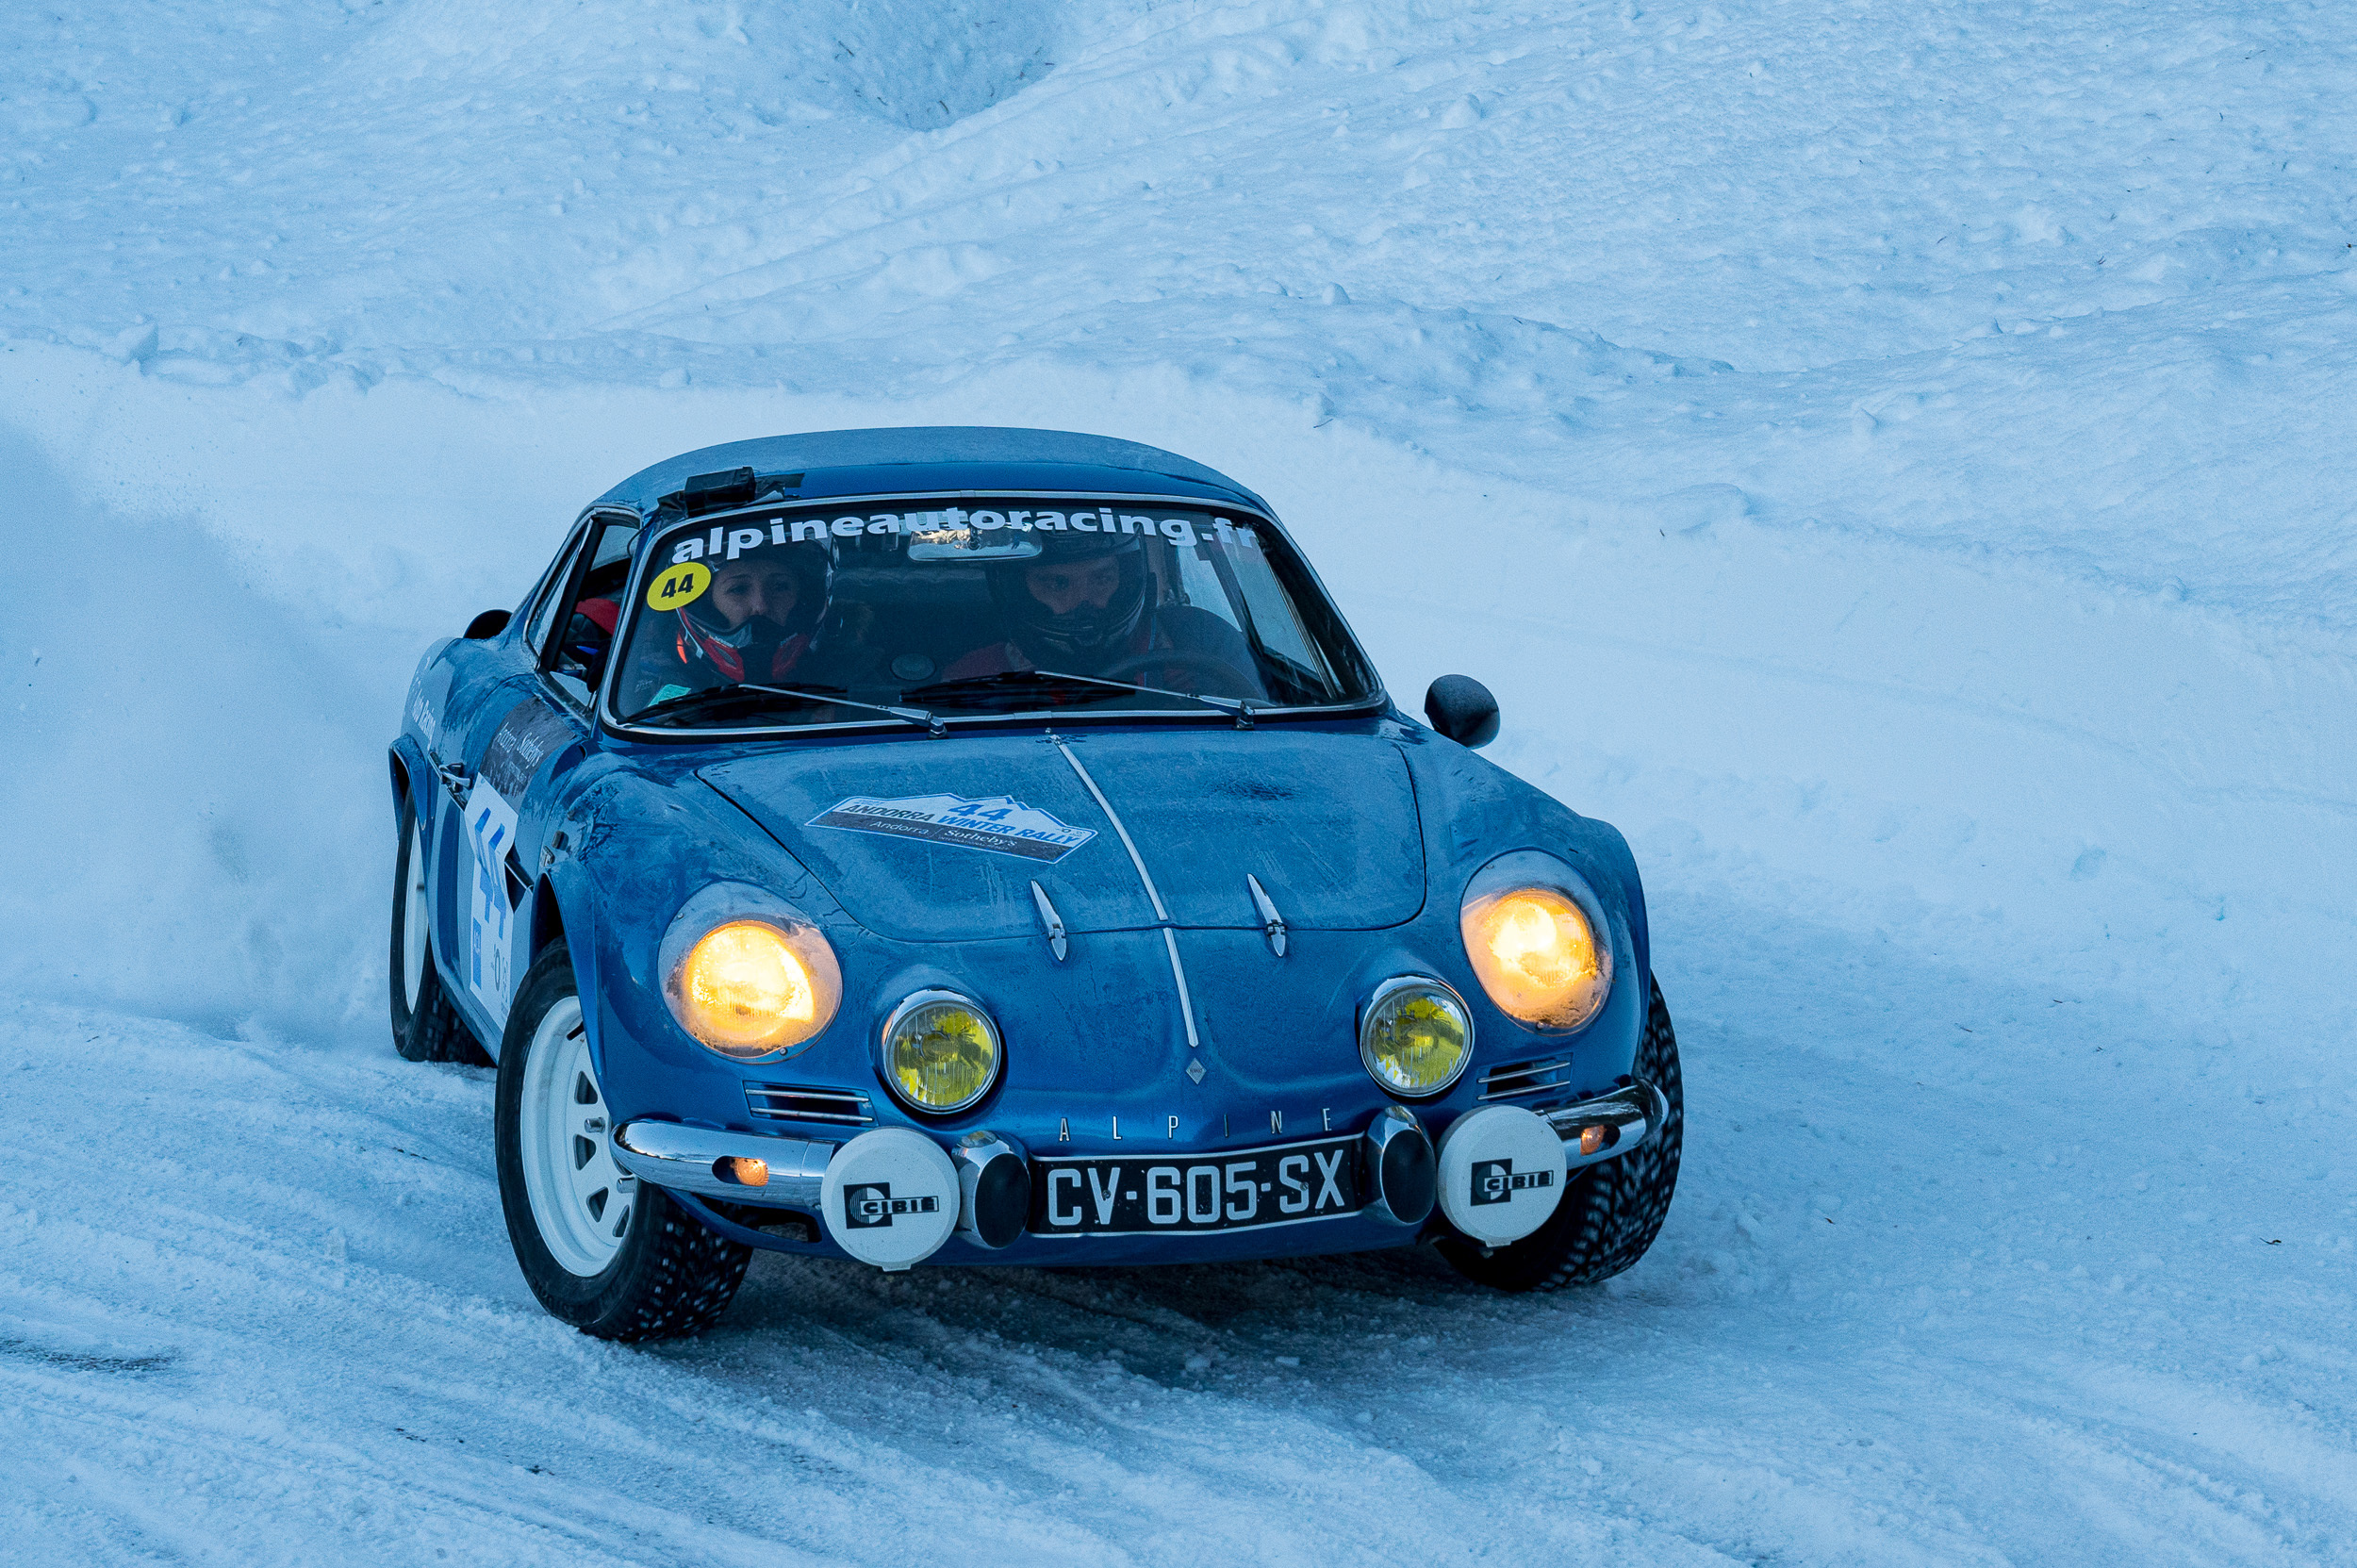 alpine_andorra_winterrally Andorra Winter Rally 2021 - Semanal Clásico - Revista online de coches clásicos, de colección y sport